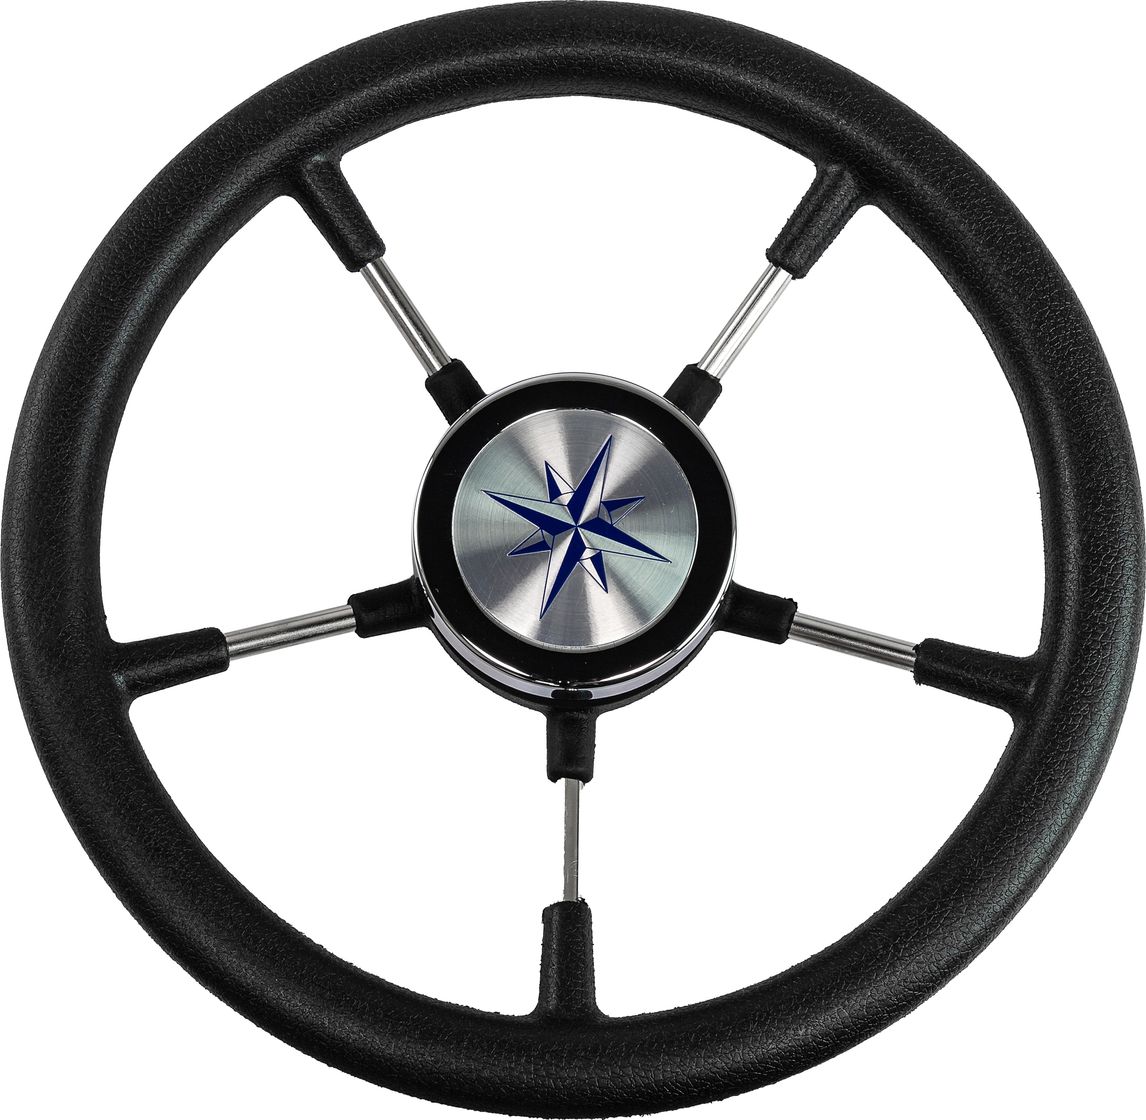 Рулевое колесо RIVA RSL обод черный, спицы серебряные д. 320 мм VN732022-01 рулевое колесо riva rsl обод спицы серебряные д 320 мм vn732022 01